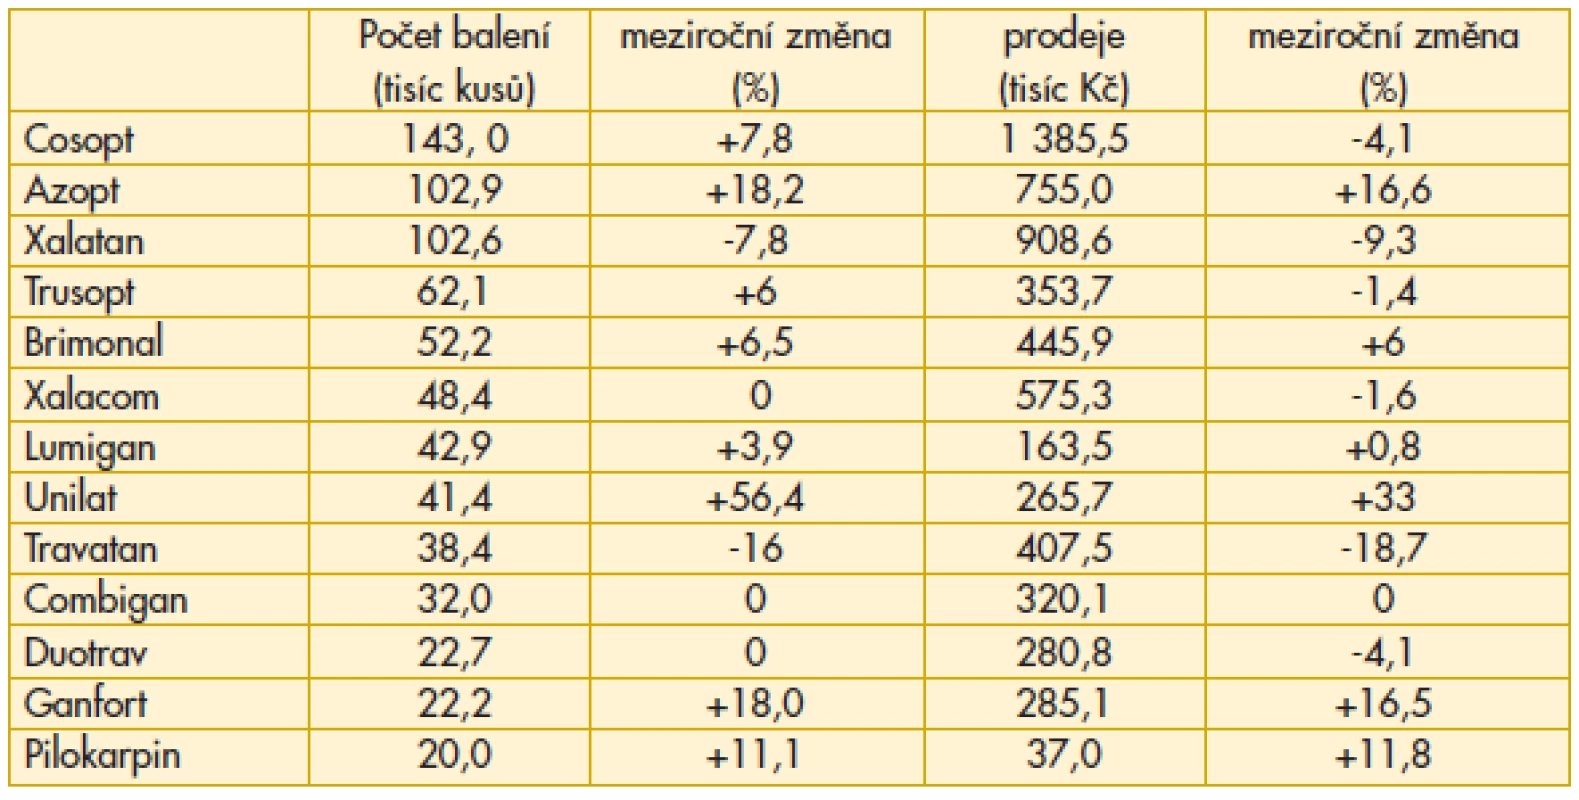 Preskripce antiglaukomatik ve Slovenské republice v roce 2012